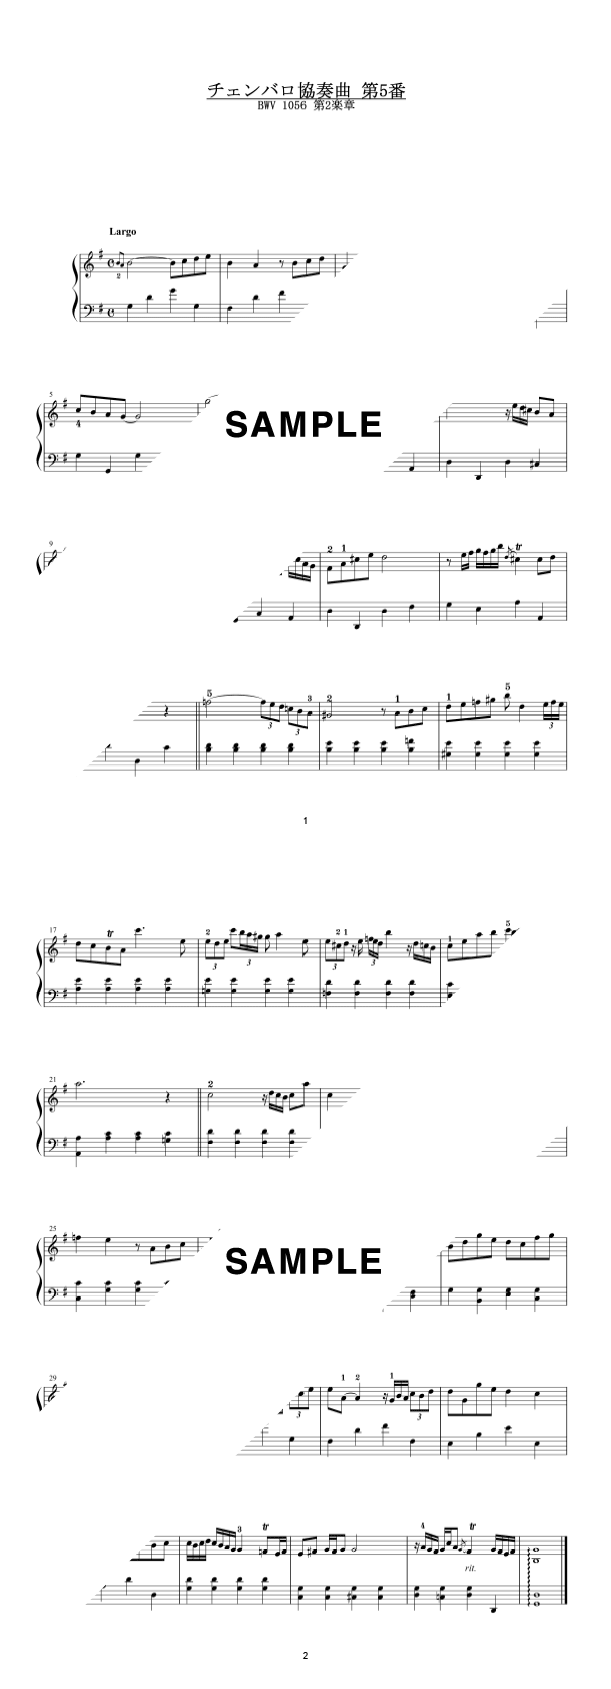 バッハ チェンバロ協奏曲 第1〜第7番 楽譜 (ベーレンライター版 